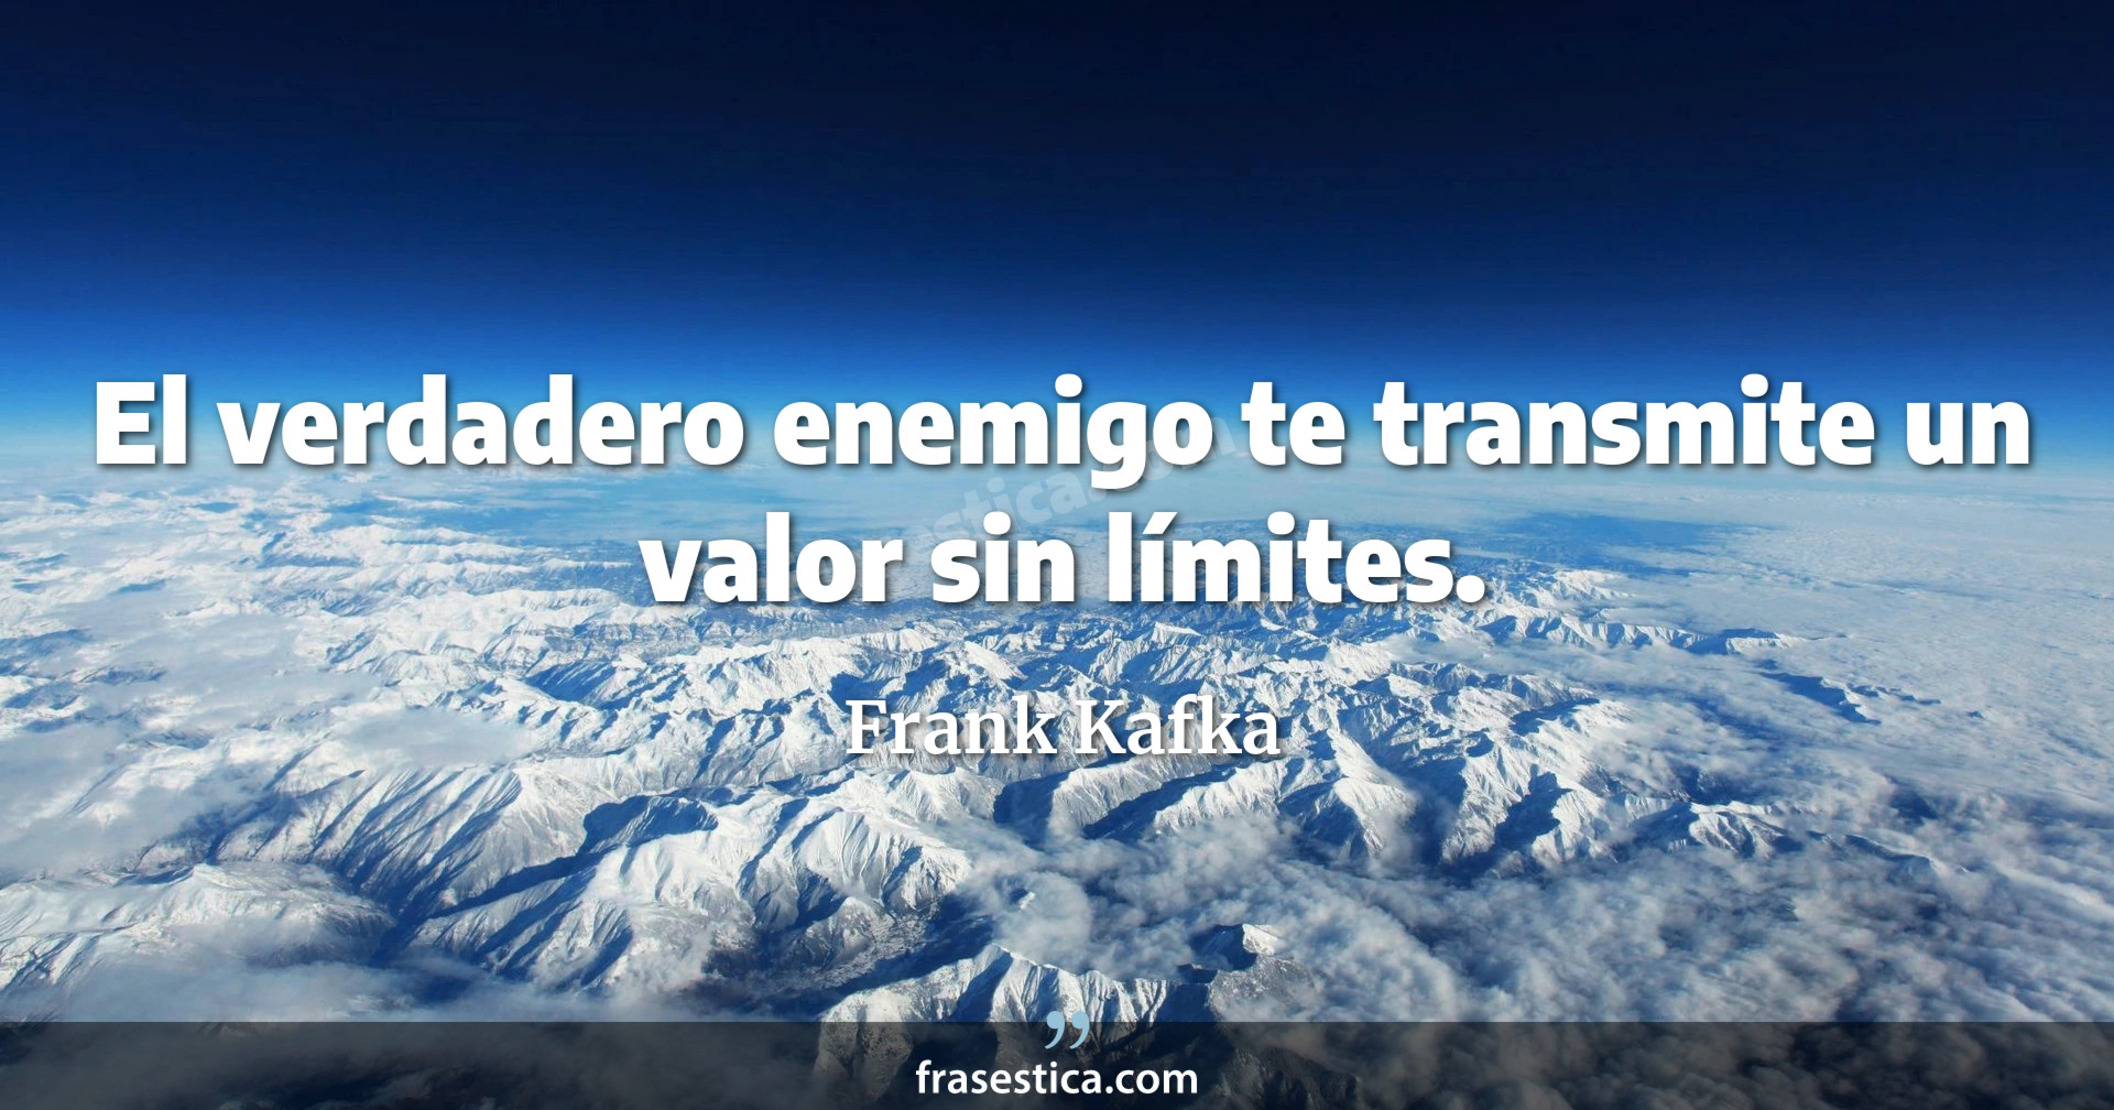 El verdadero enemigo te transmite un valor sin límites. - Frank Kafka